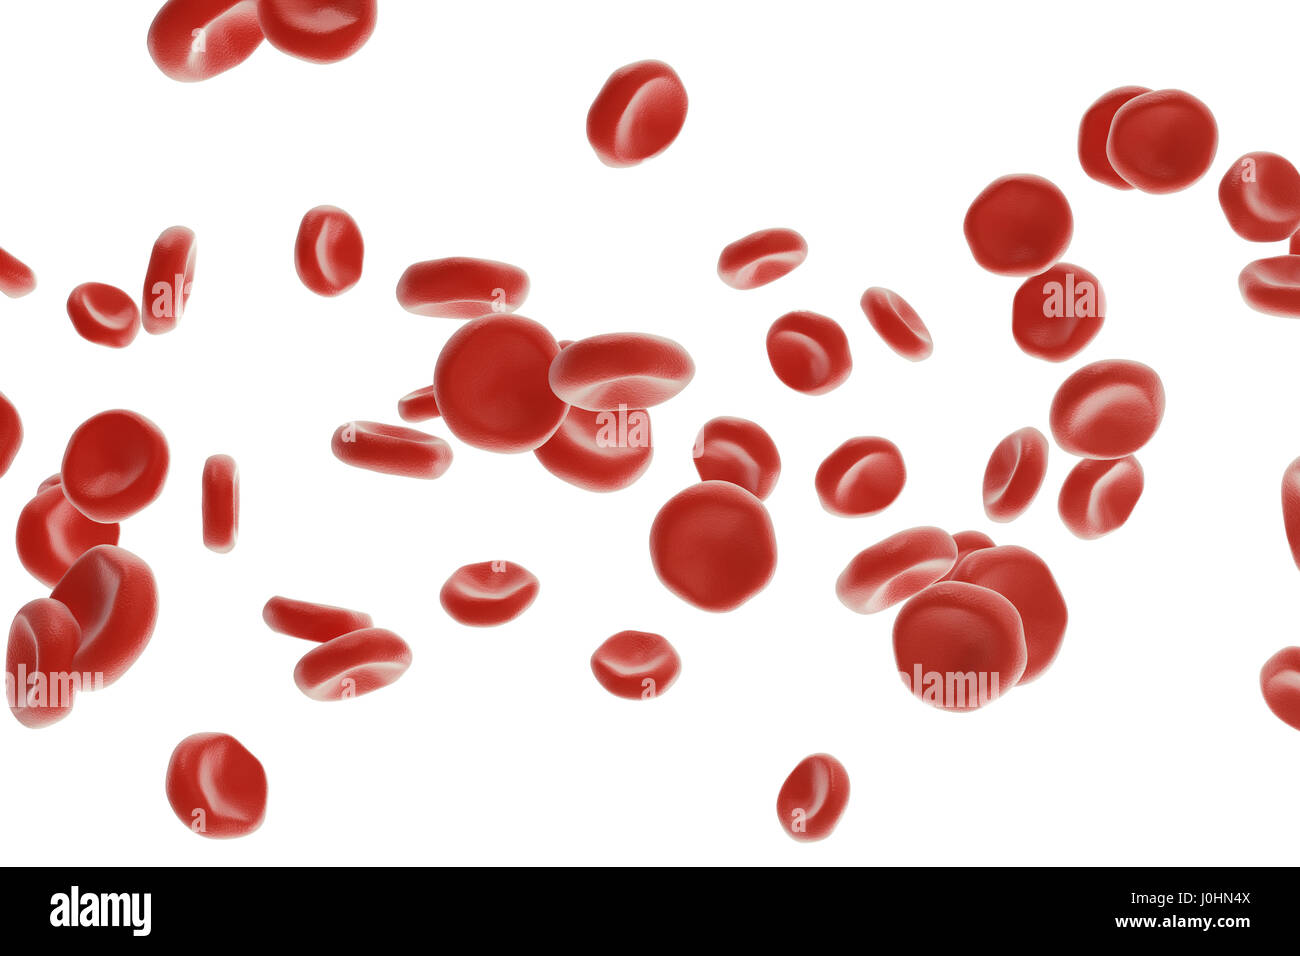 Abstrakte rote Blutkörperchen, wissenschaftliche oder medizinische oder mikrobiologische Konzept, 3D-Rendering isoliert auf weißem Hintergrund Stockfoto